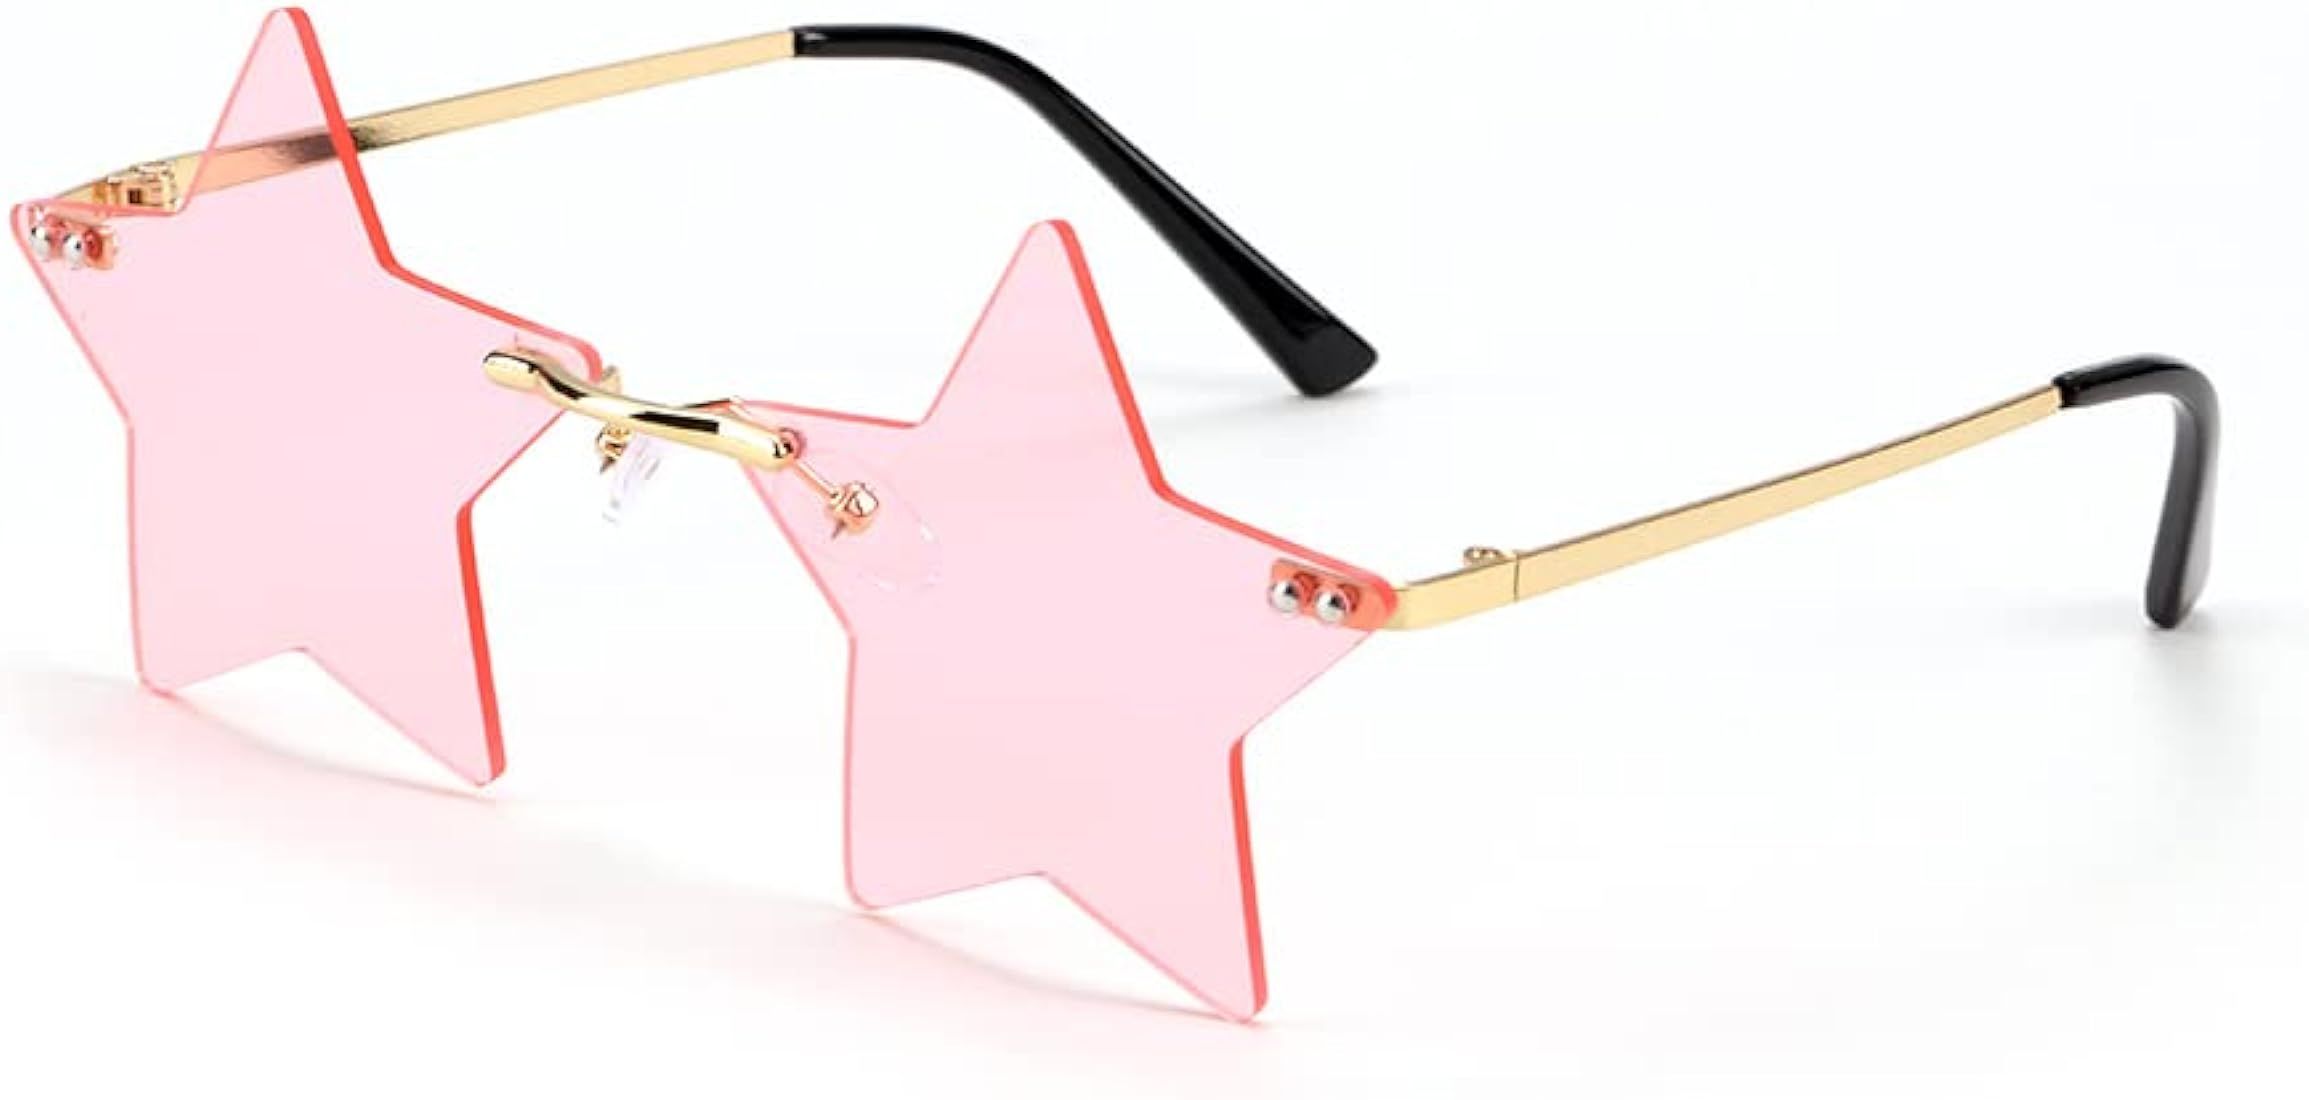 genenic Rimless Star Shape Sunglasses Trendy Sun Glasses for Women Men Party Glasses Pentagram Ey... | Amazon (US)